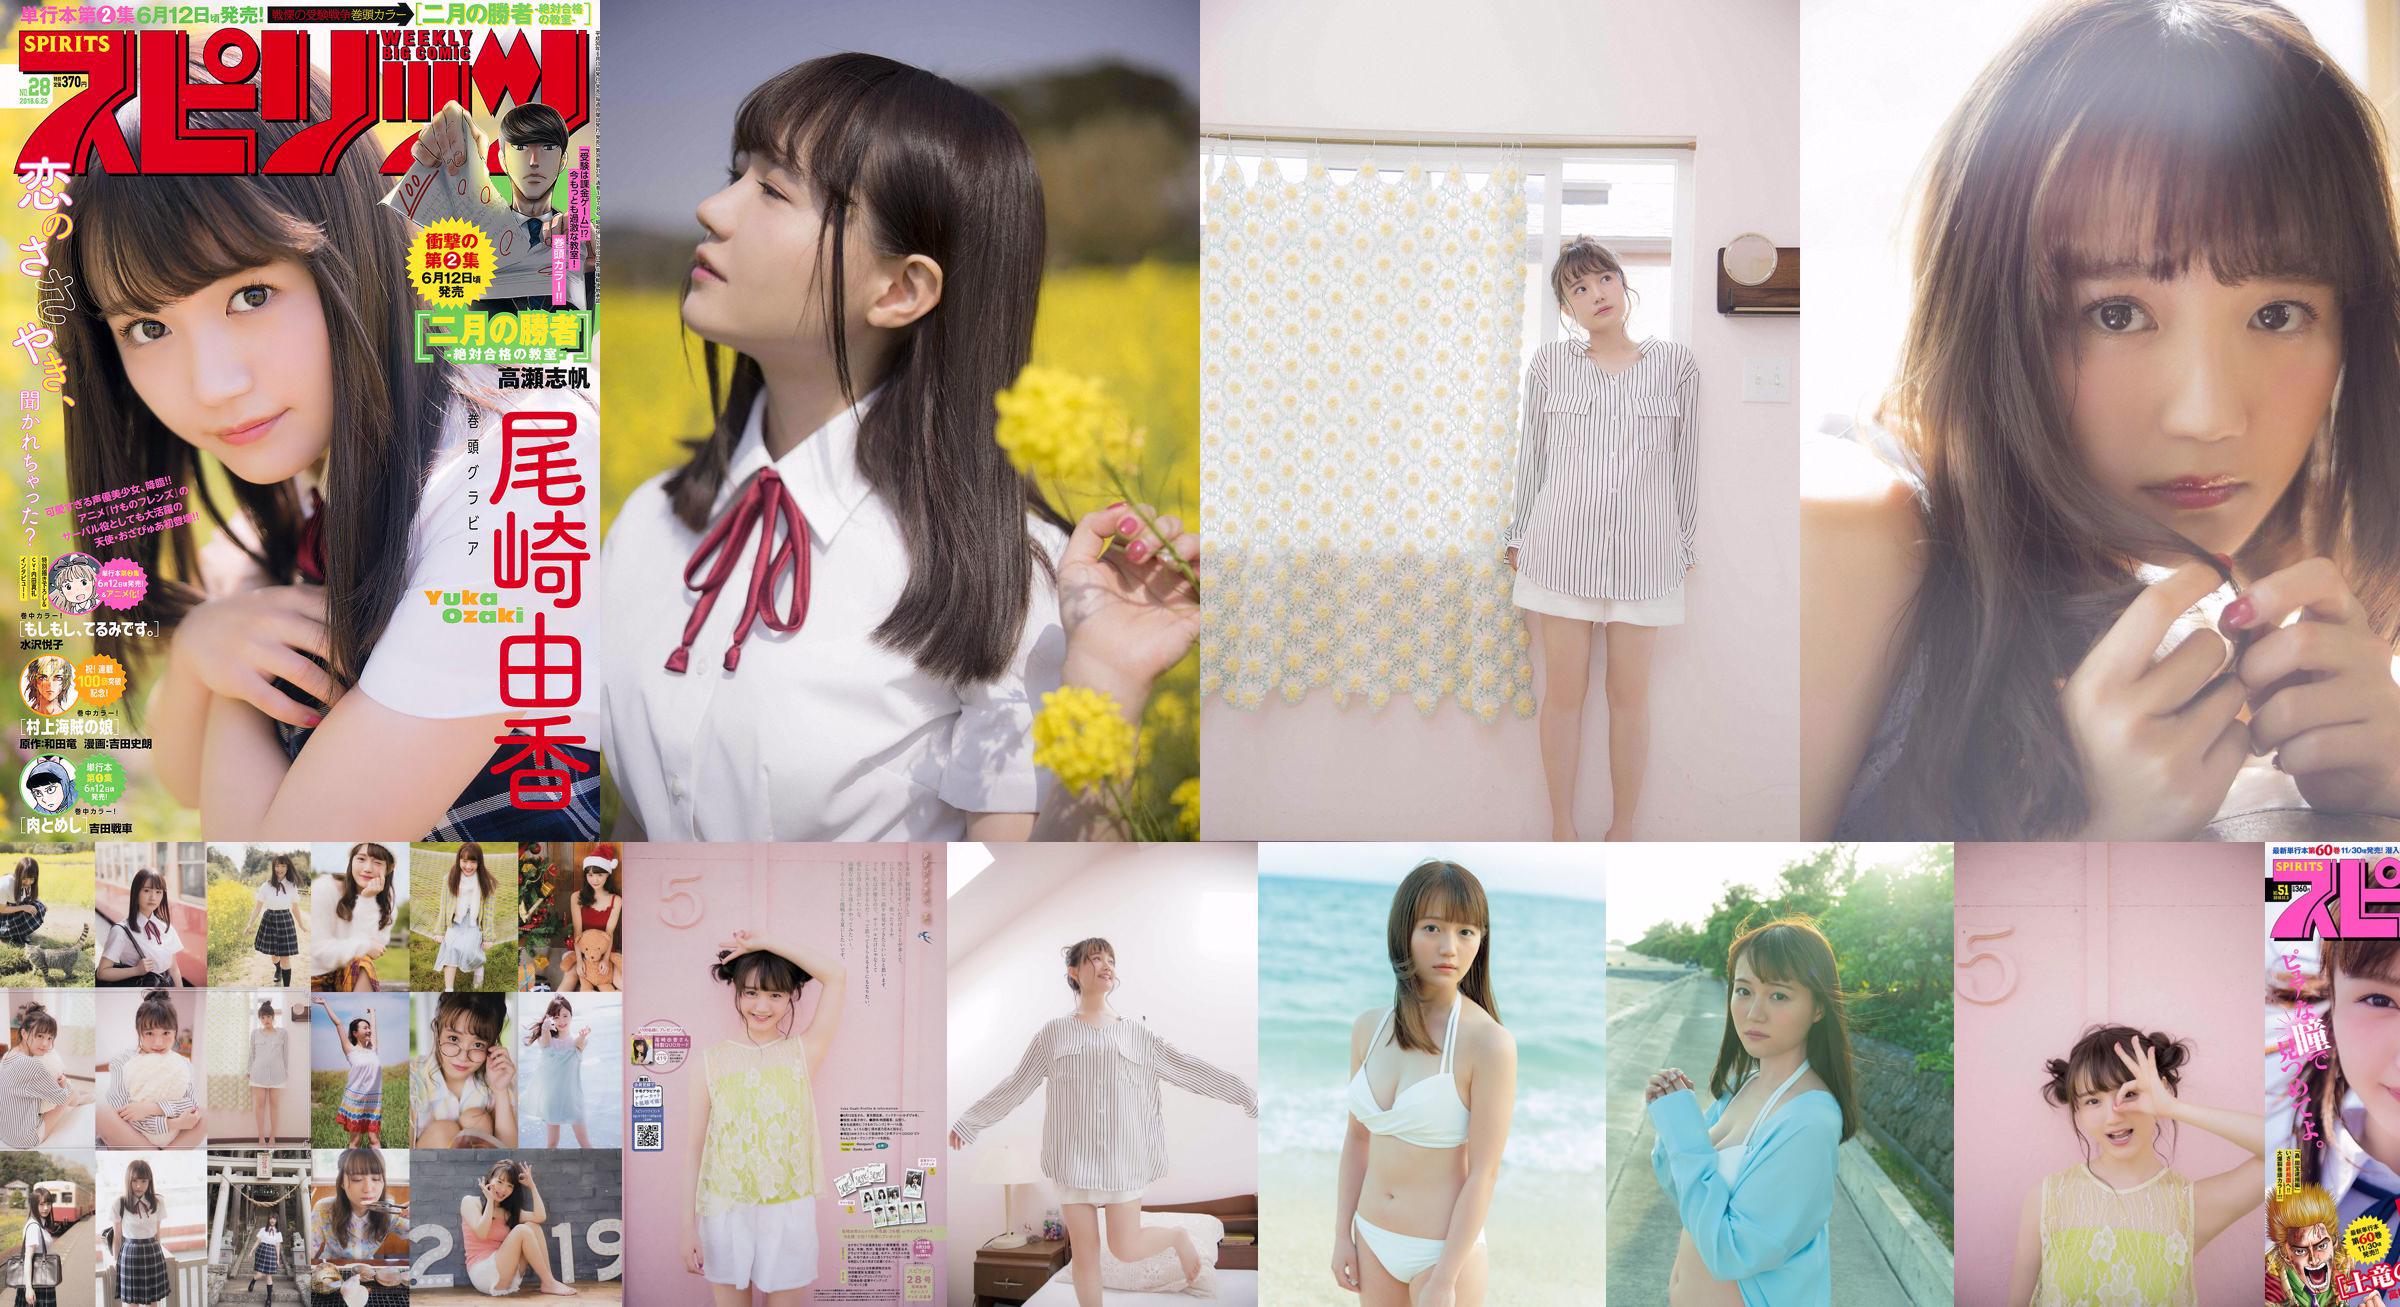 [Weekly Big Comic Spirits] Yuka Ozaki No.51 Photo Magazine nel 2018 No.8d40df Pagina 2